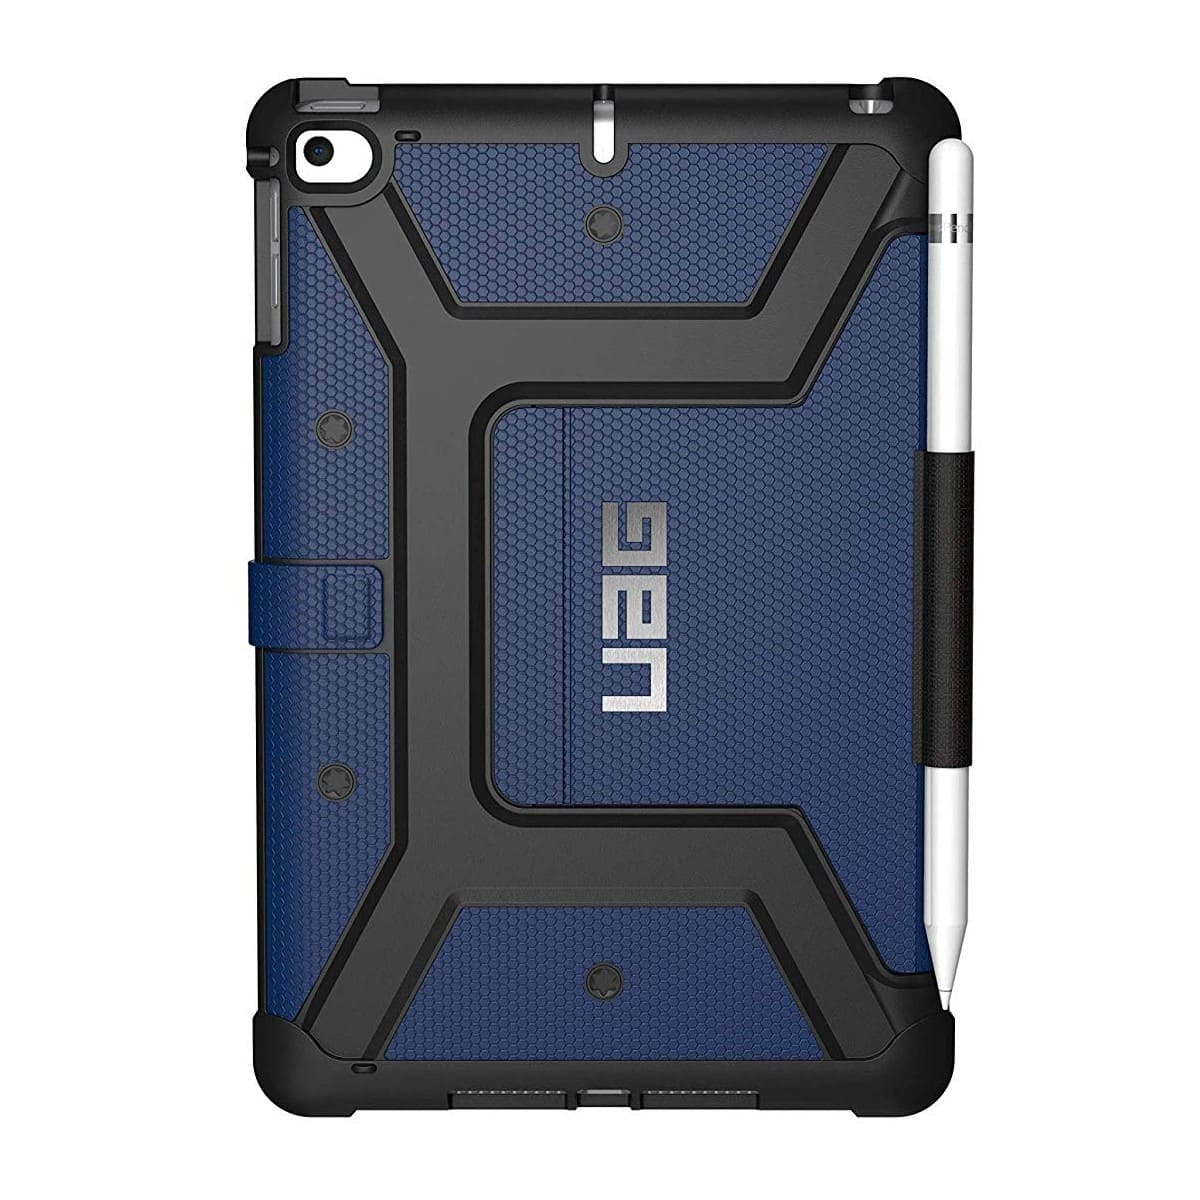 Защитный чехол UAG для iPad Mini 2019 серия Metropolis,  синий